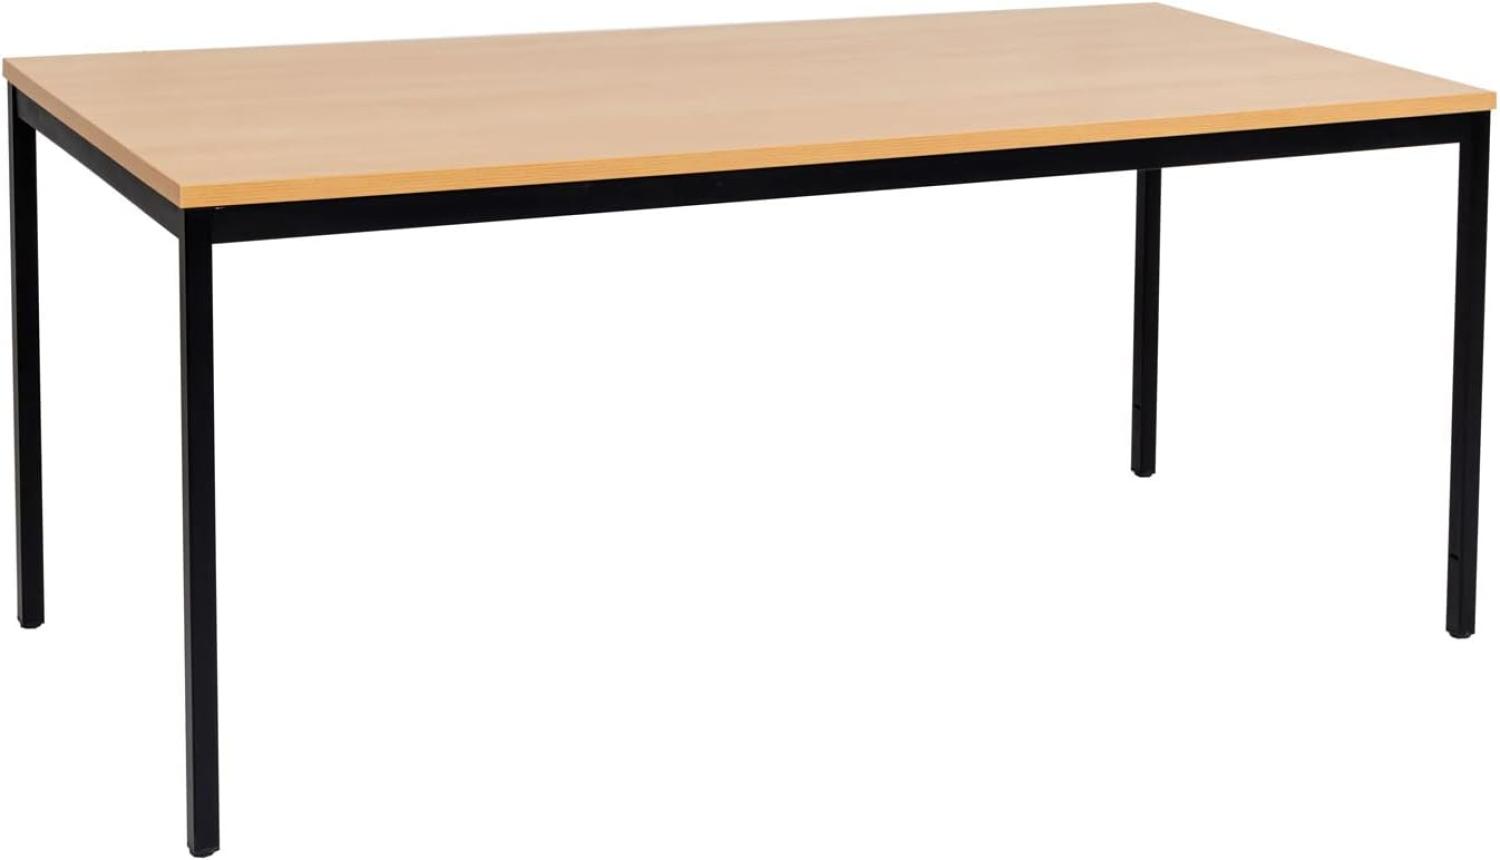 Furni24 Rechteckiger Universaltisch mit laminierter Platte Buche 200x80x75 cm, Metallgestell und niveauausgleichs Füßen, ideal im Homeoffice als Schreibtisch, Konferenztisch, Computertisch, Esstisch Bild 1